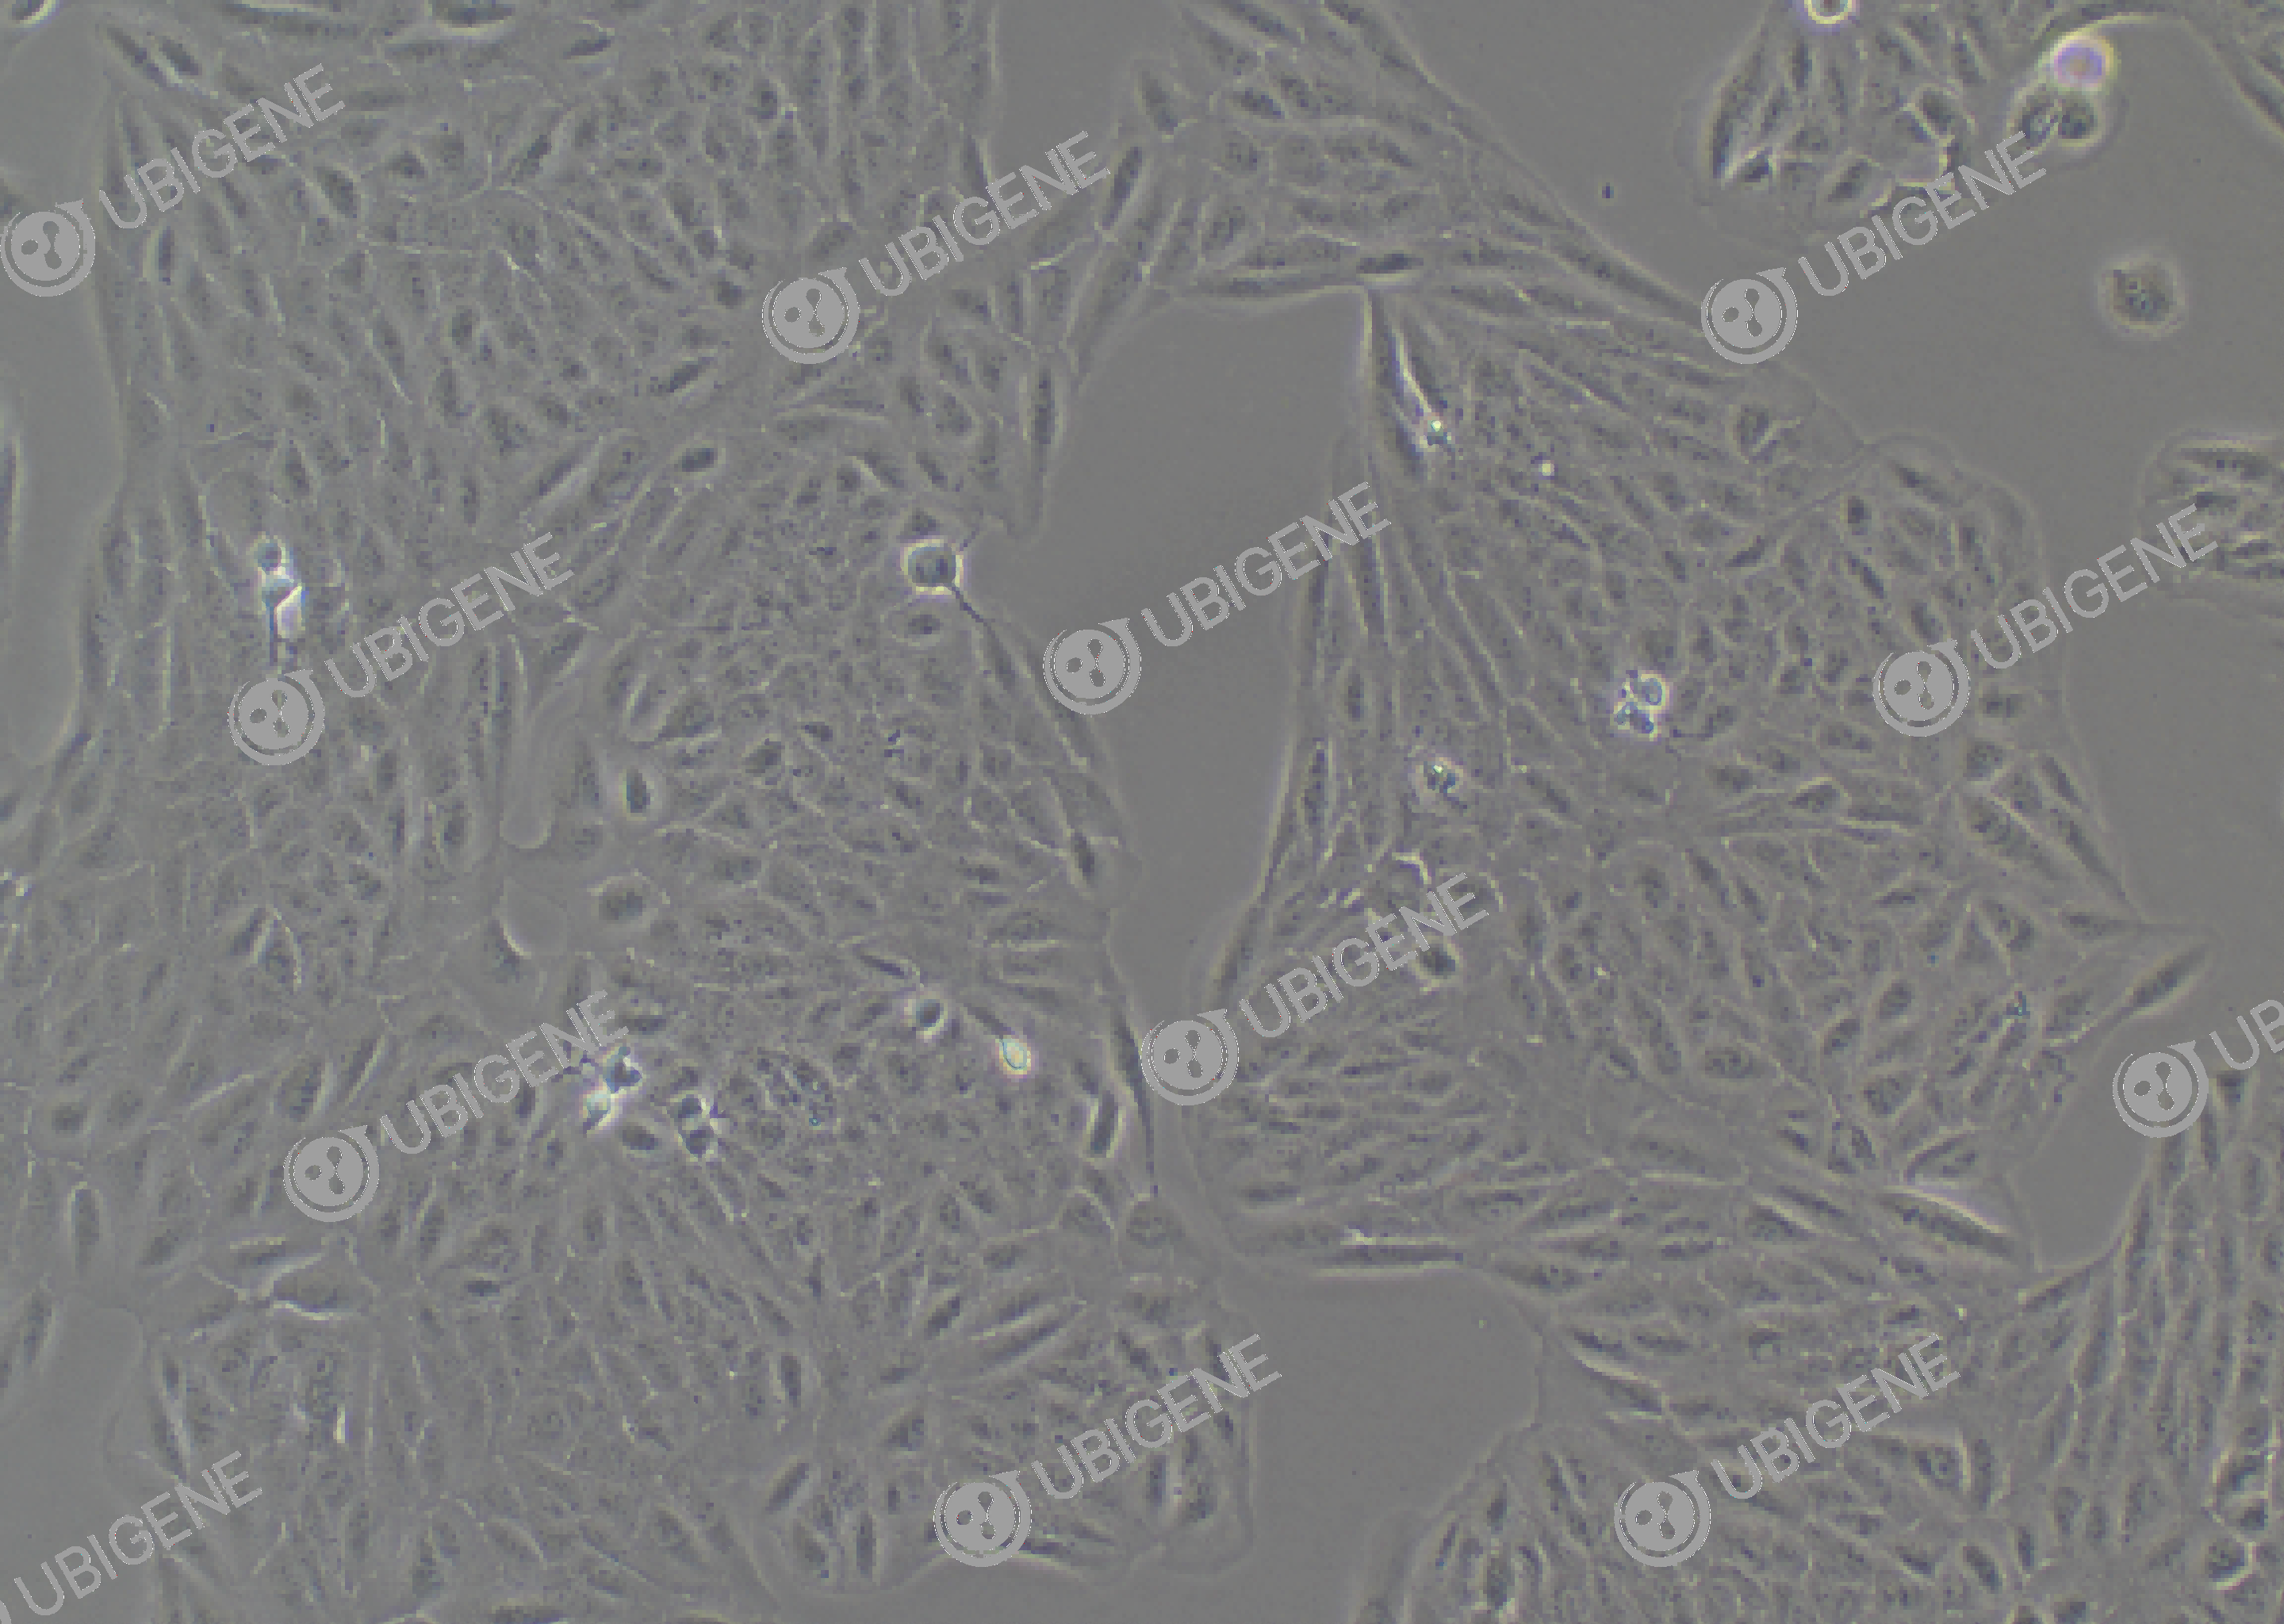 人视网膜色素上皮细胞(ARPE-19)细胞形态培养图